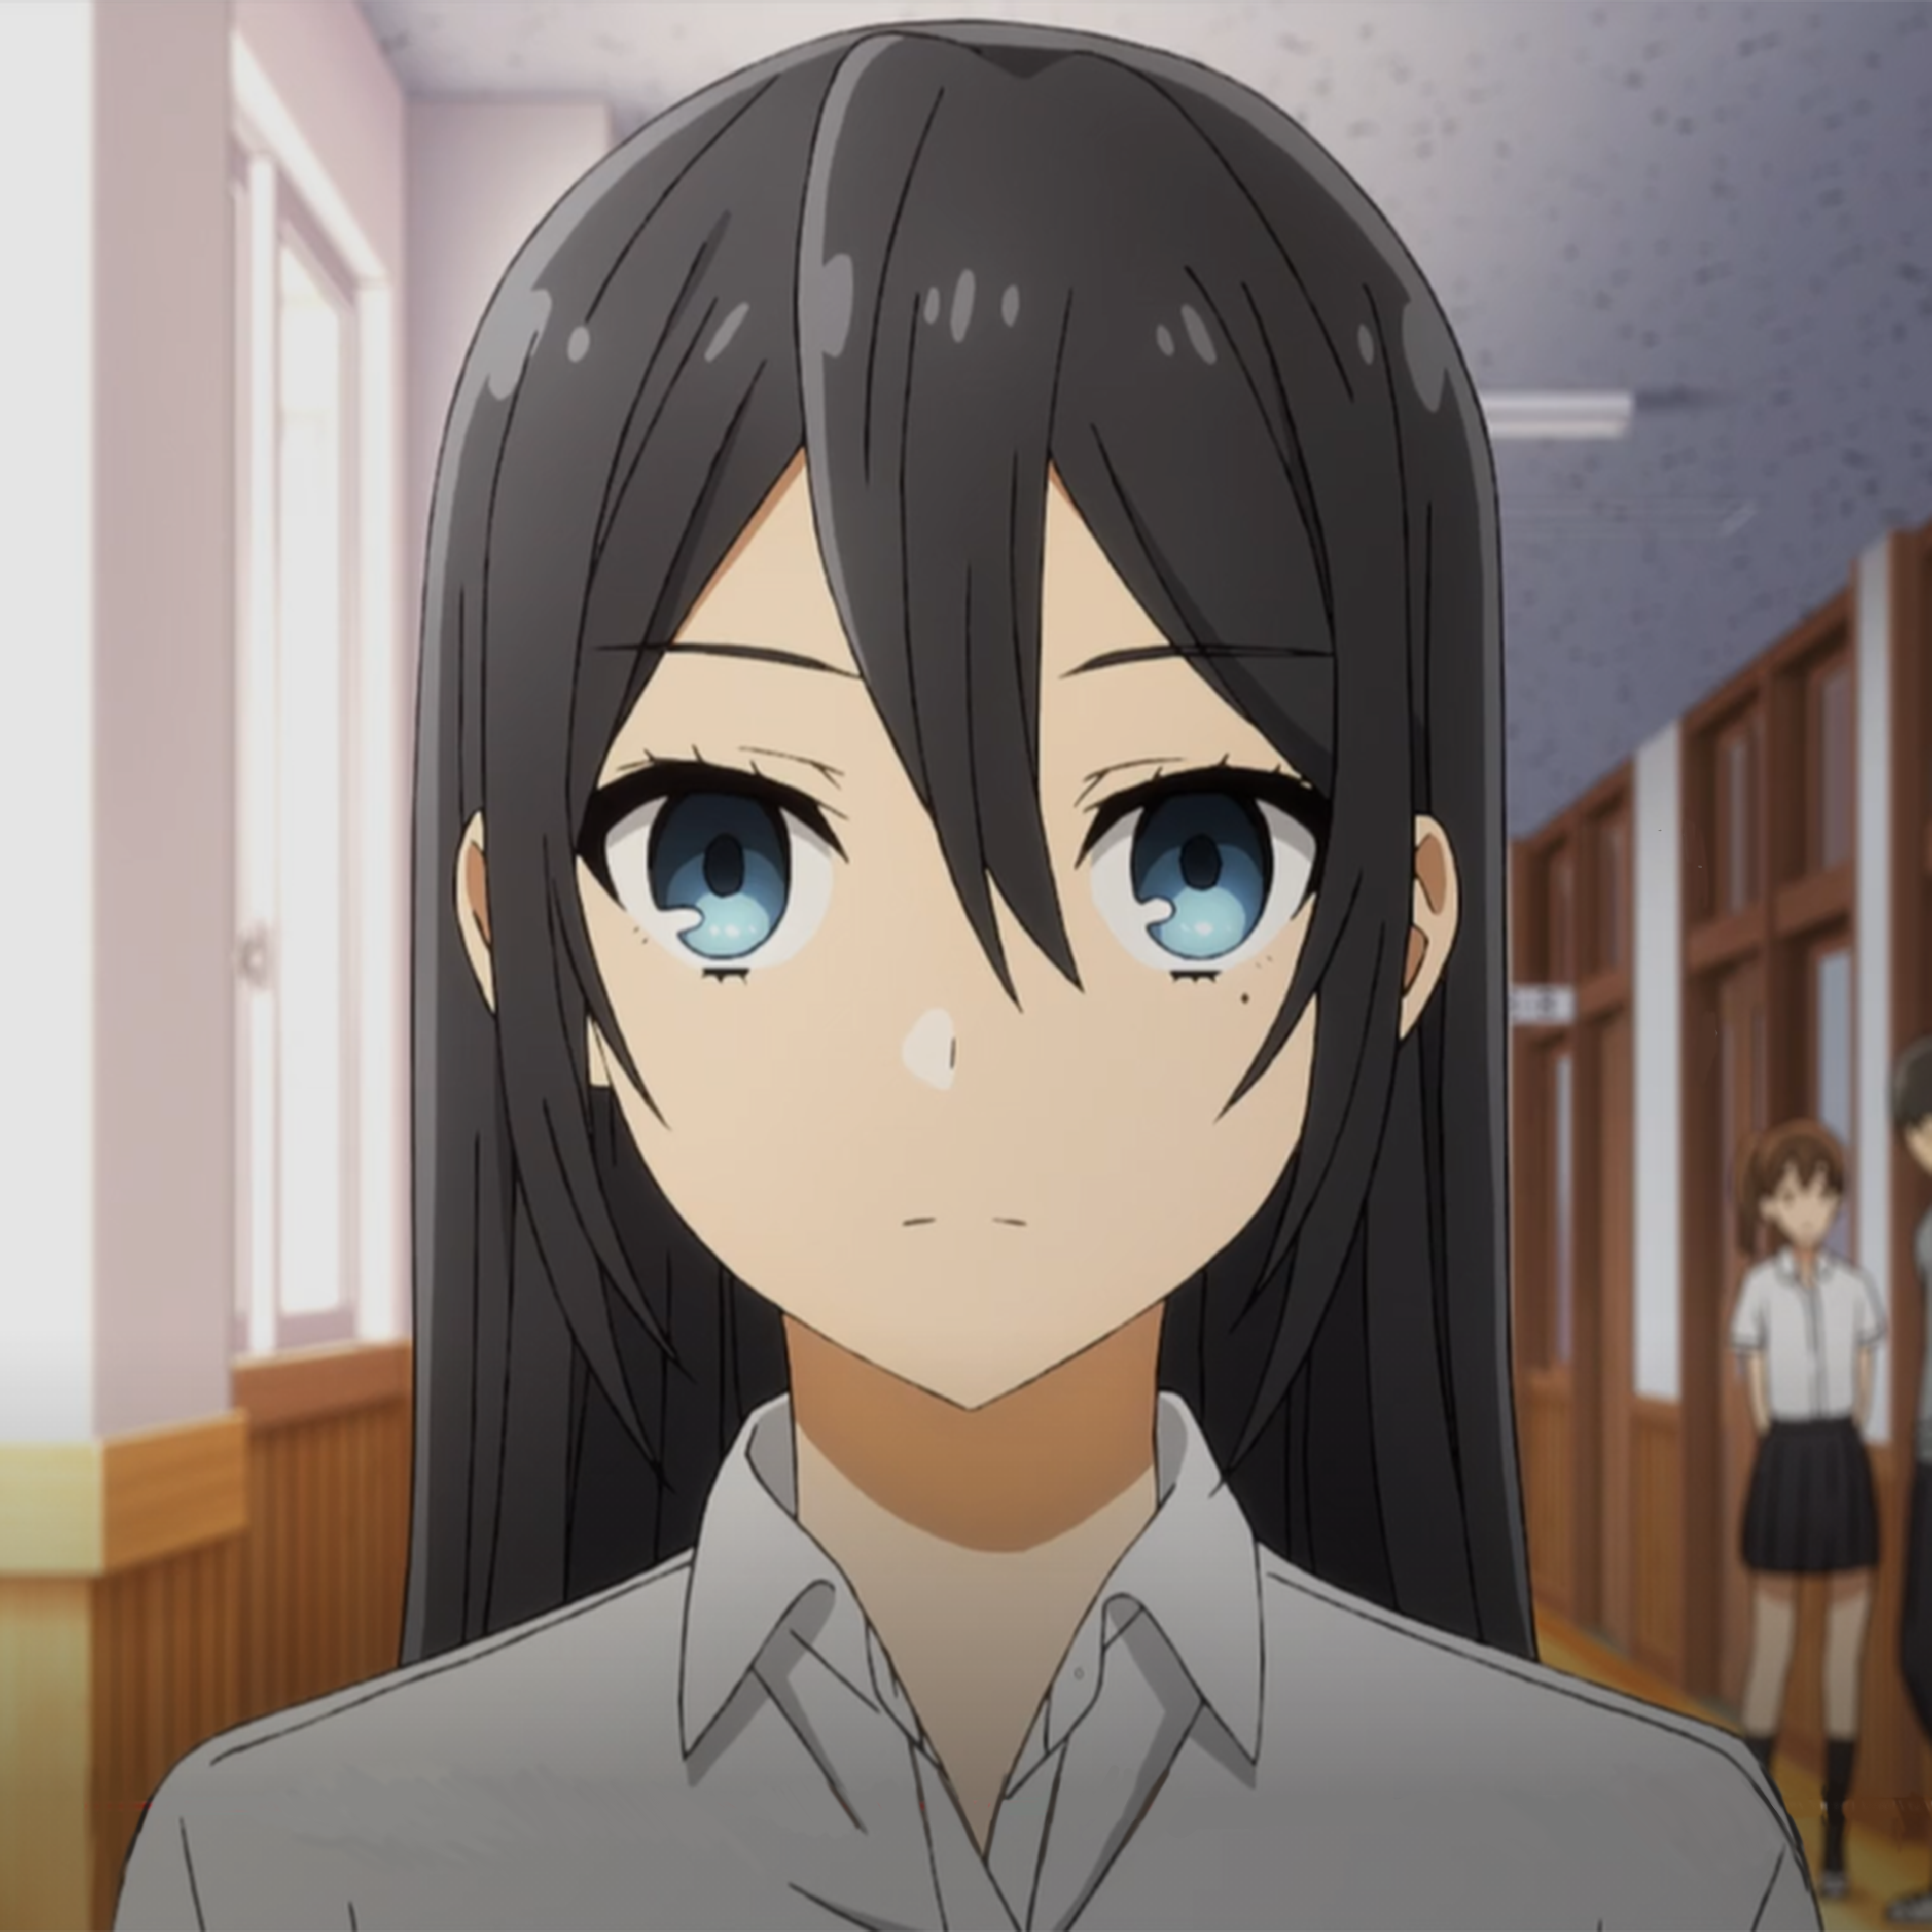 Anime News - Anime: Horimiya Sinopse Na escola, Kyouko Hori é conhecida por  ser inteligente, atraente e popular. Por outro lado, seu colega de classe,  o chato e sombrio Izumi Miyamura tende